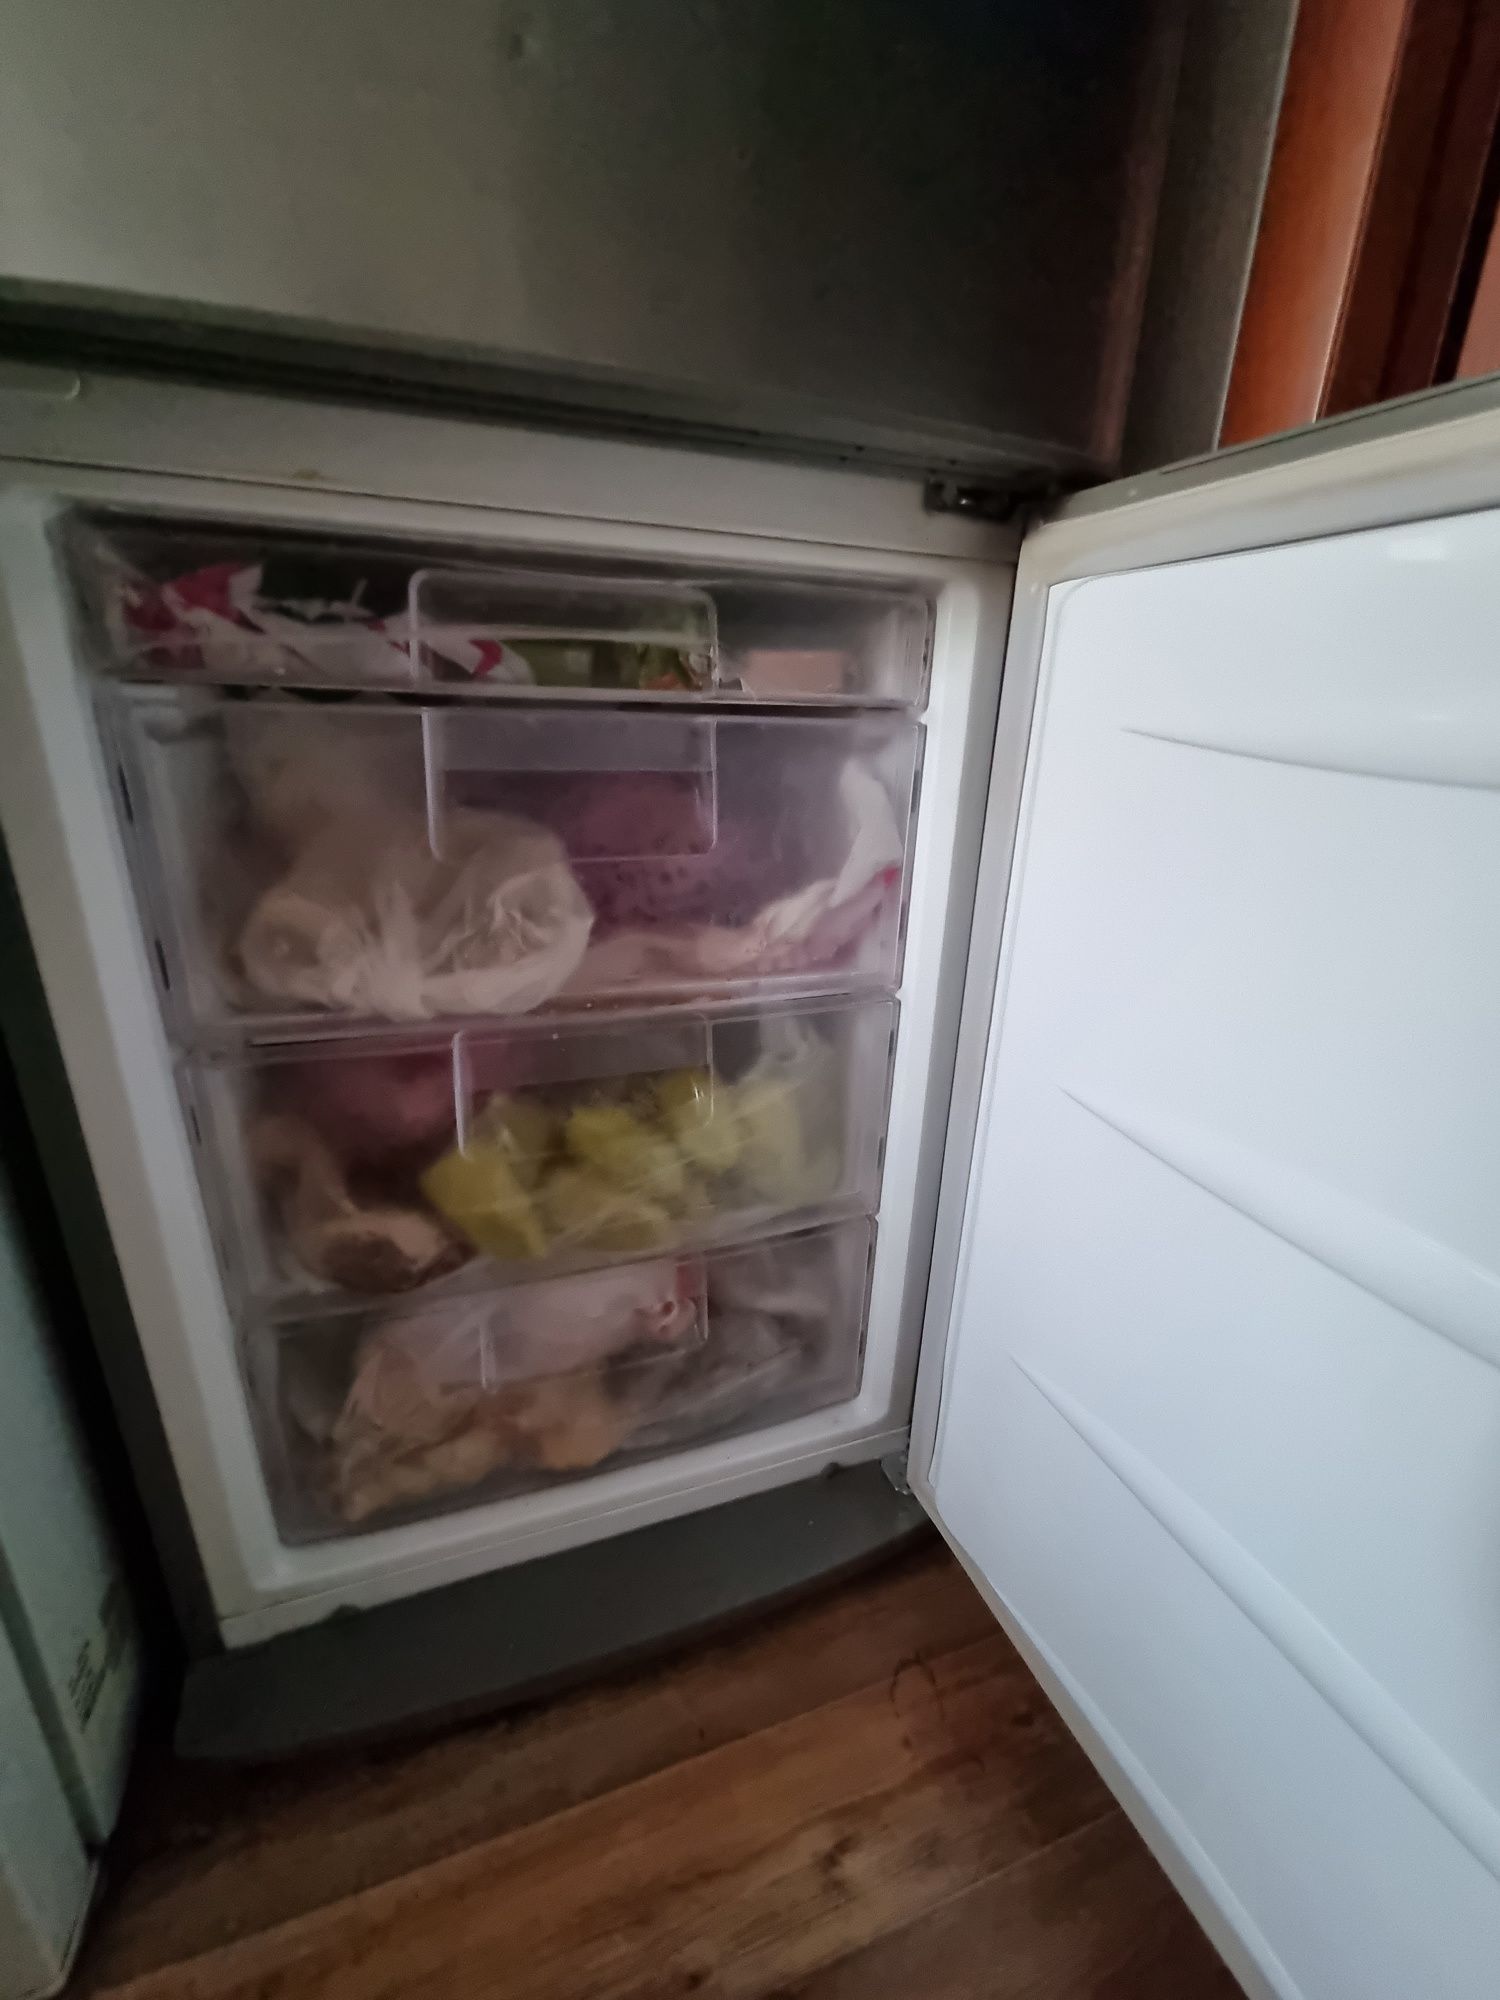 Холодильник и морозильник